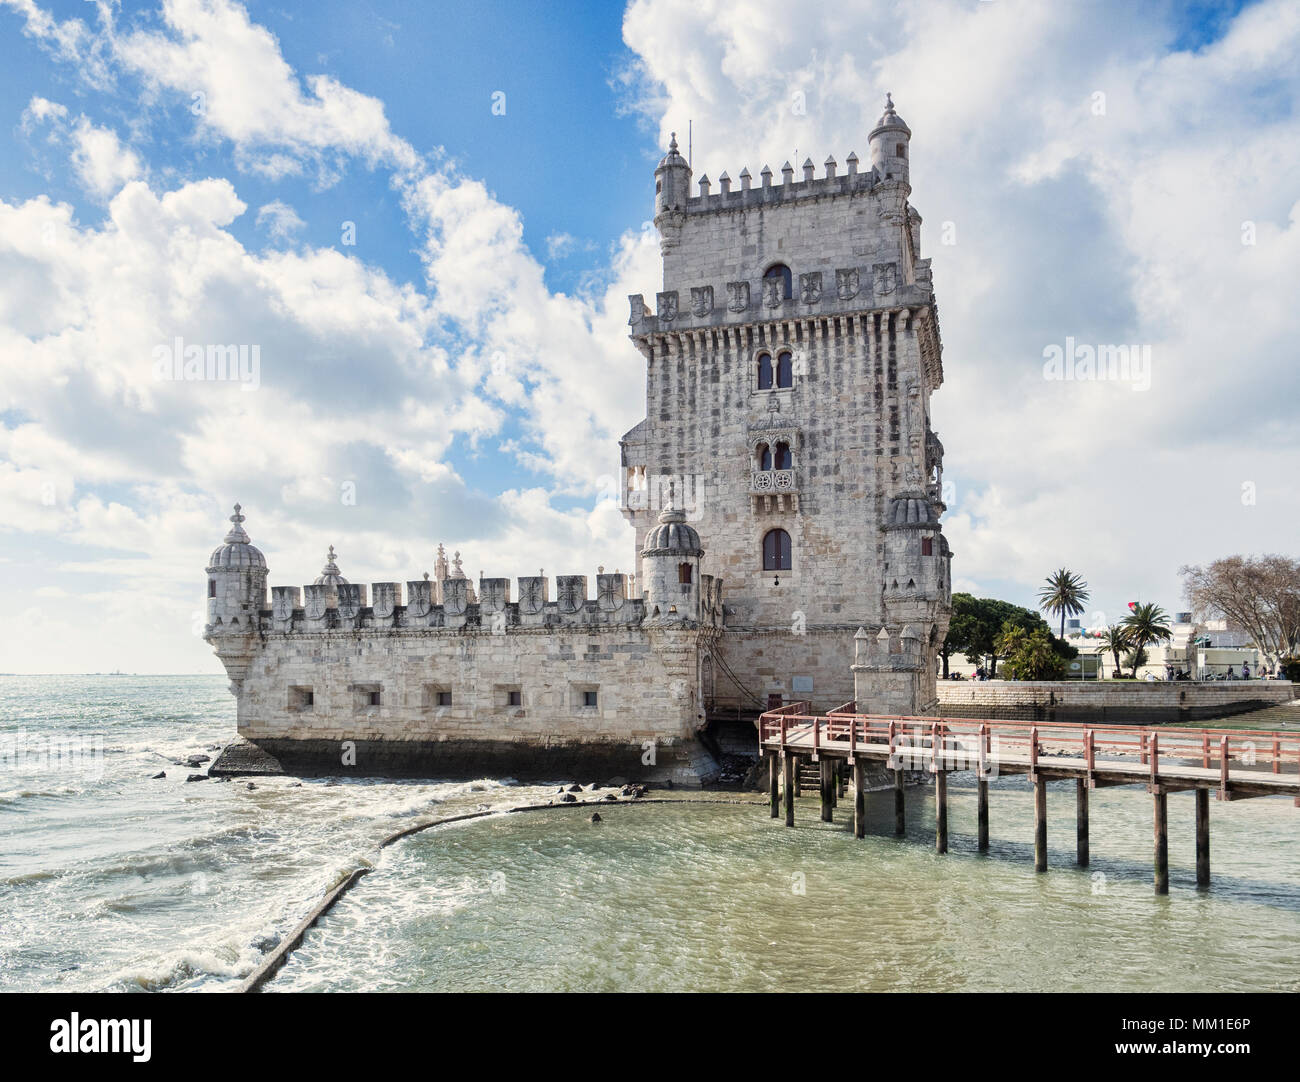 5 mars 2018 : Lisbonne Portugal -la Tour de Belém, célèbre monument et site du patrimoine mondial de l'UNESCO. Banque D'Images